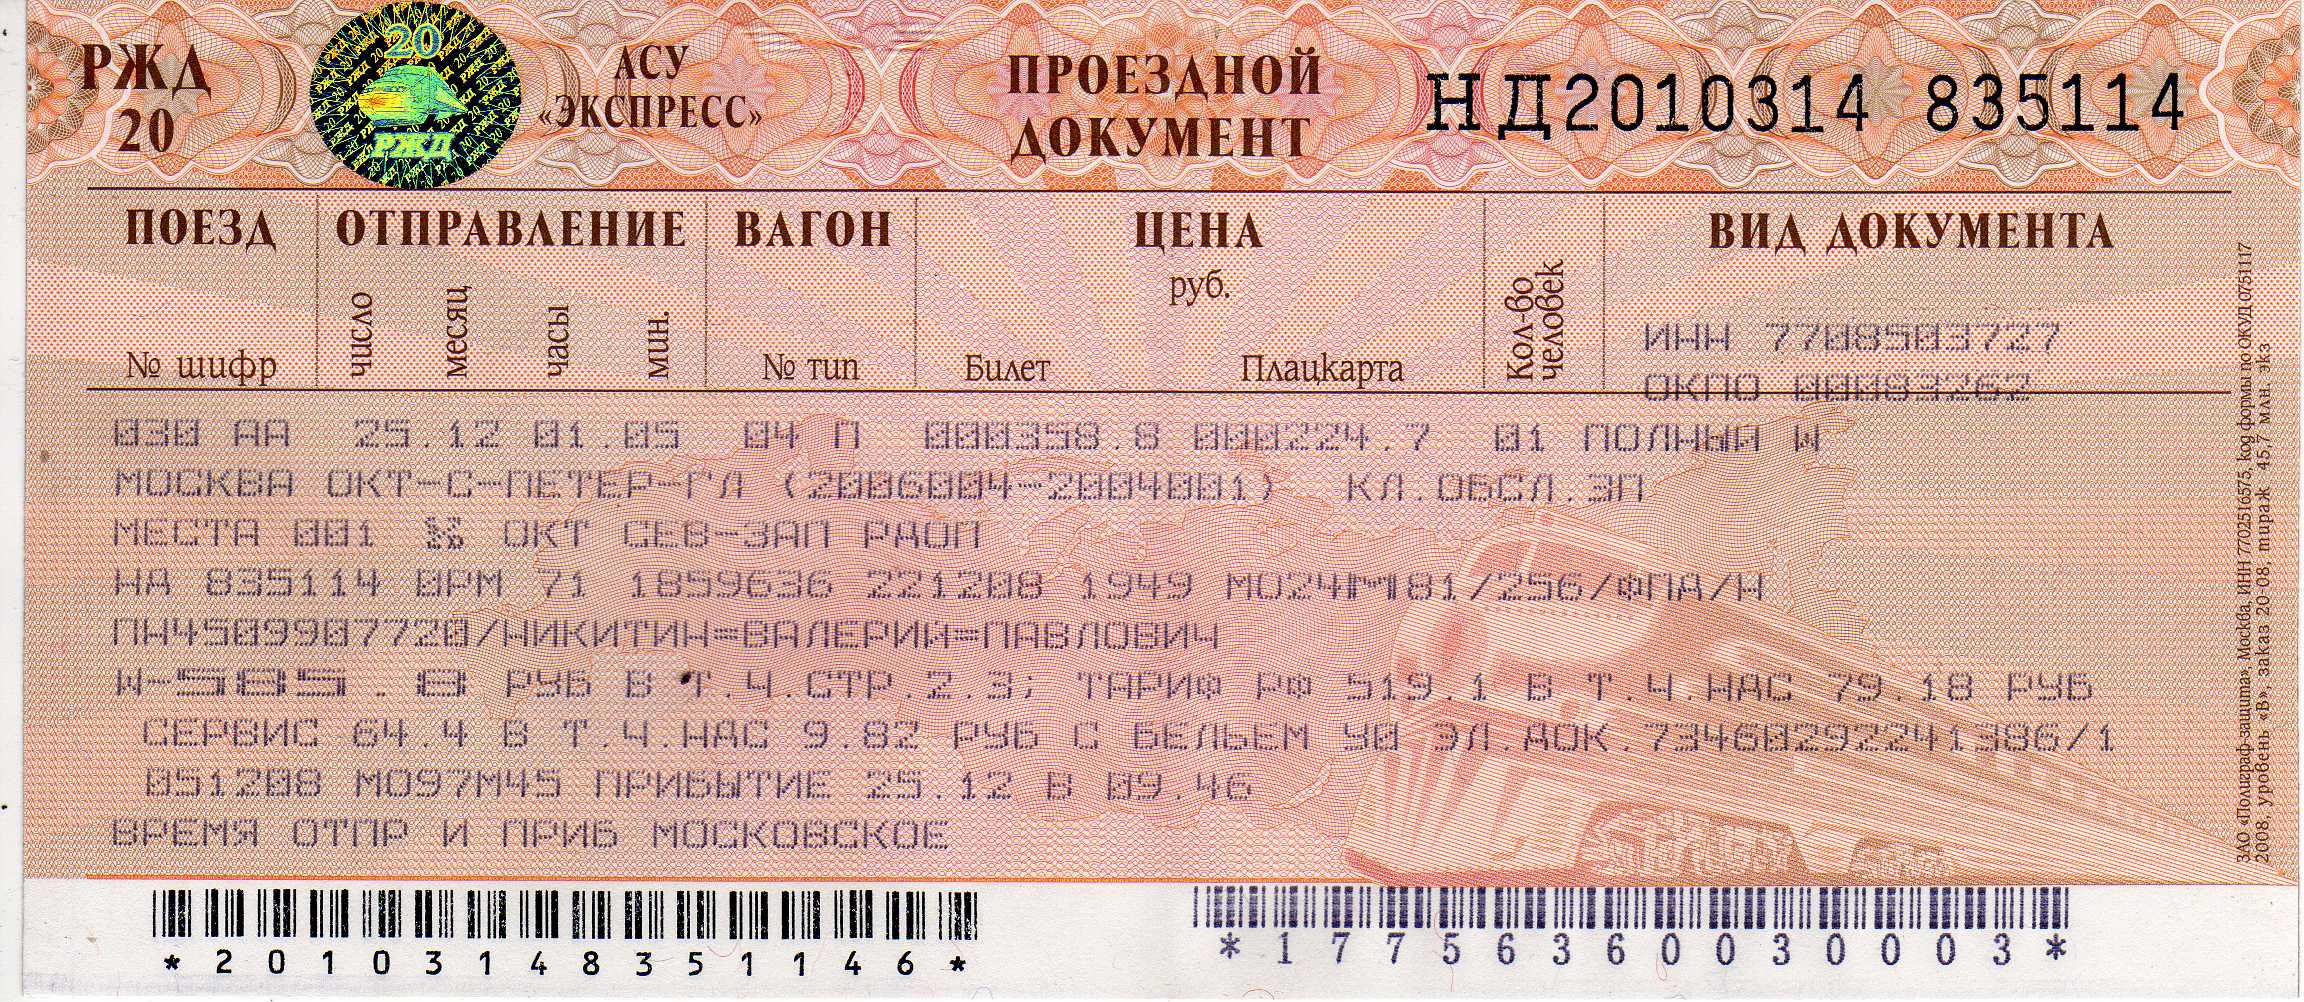 Купить билеты на московский поезд. Ж/Д билеты. Билеты РЖД. Билет на поезд. Проездной документ.